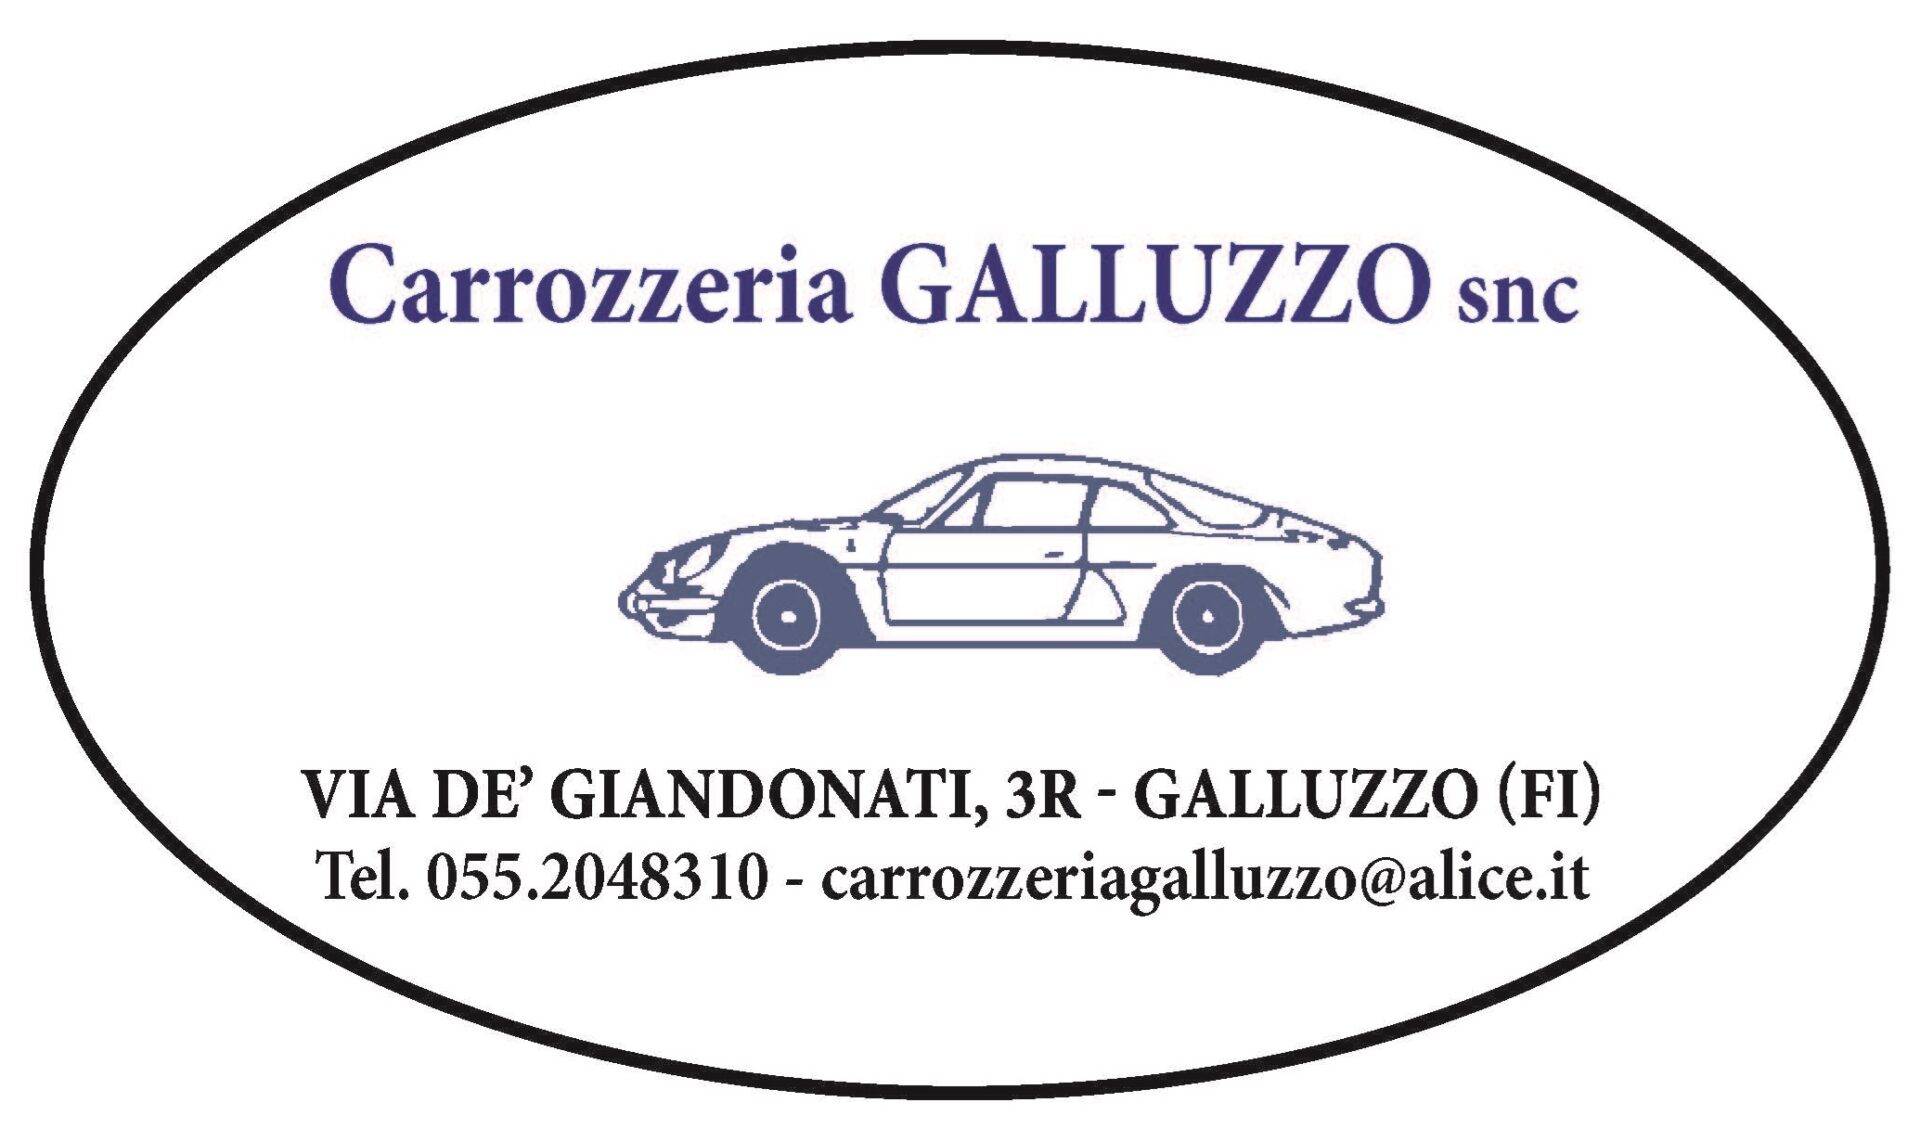 Carrozzeria Galluzzo